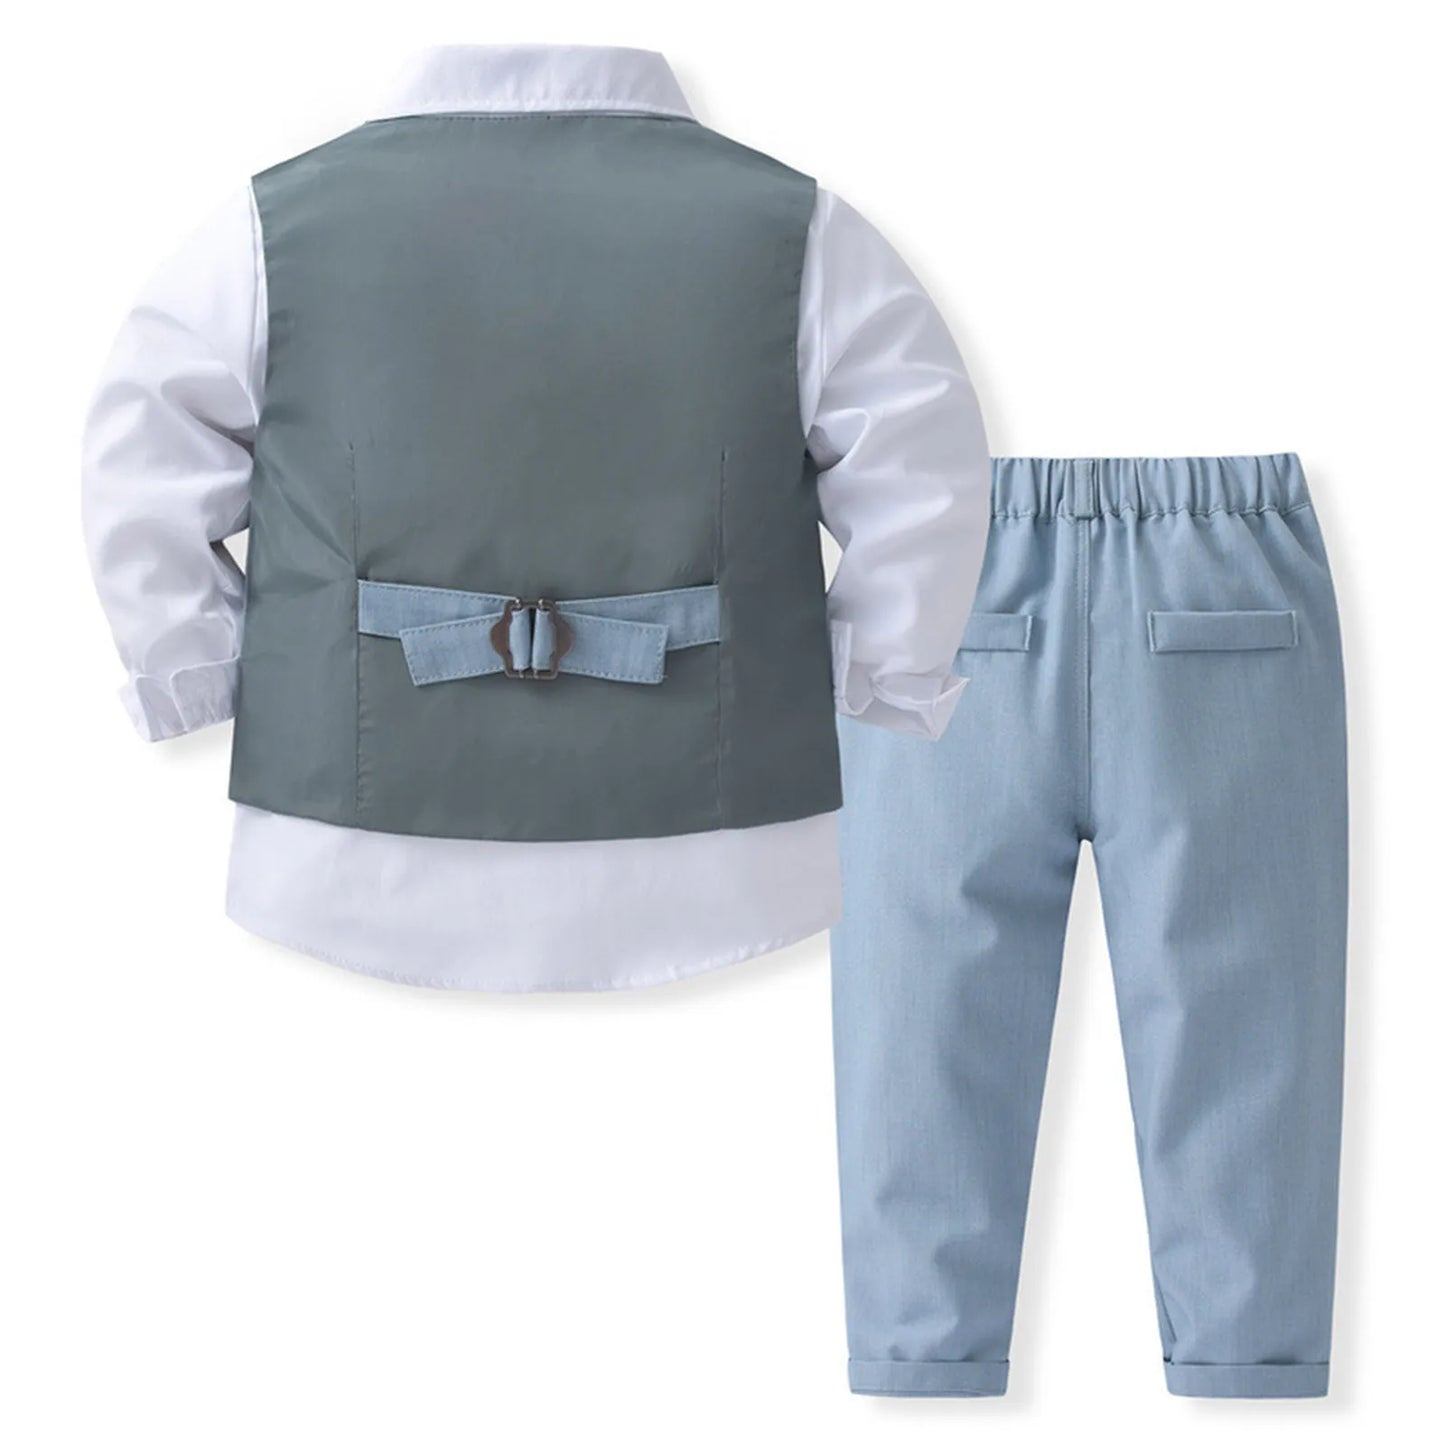 Boys Gentleman Suit Set with Shirt, Bowtie, Vest, and Pants